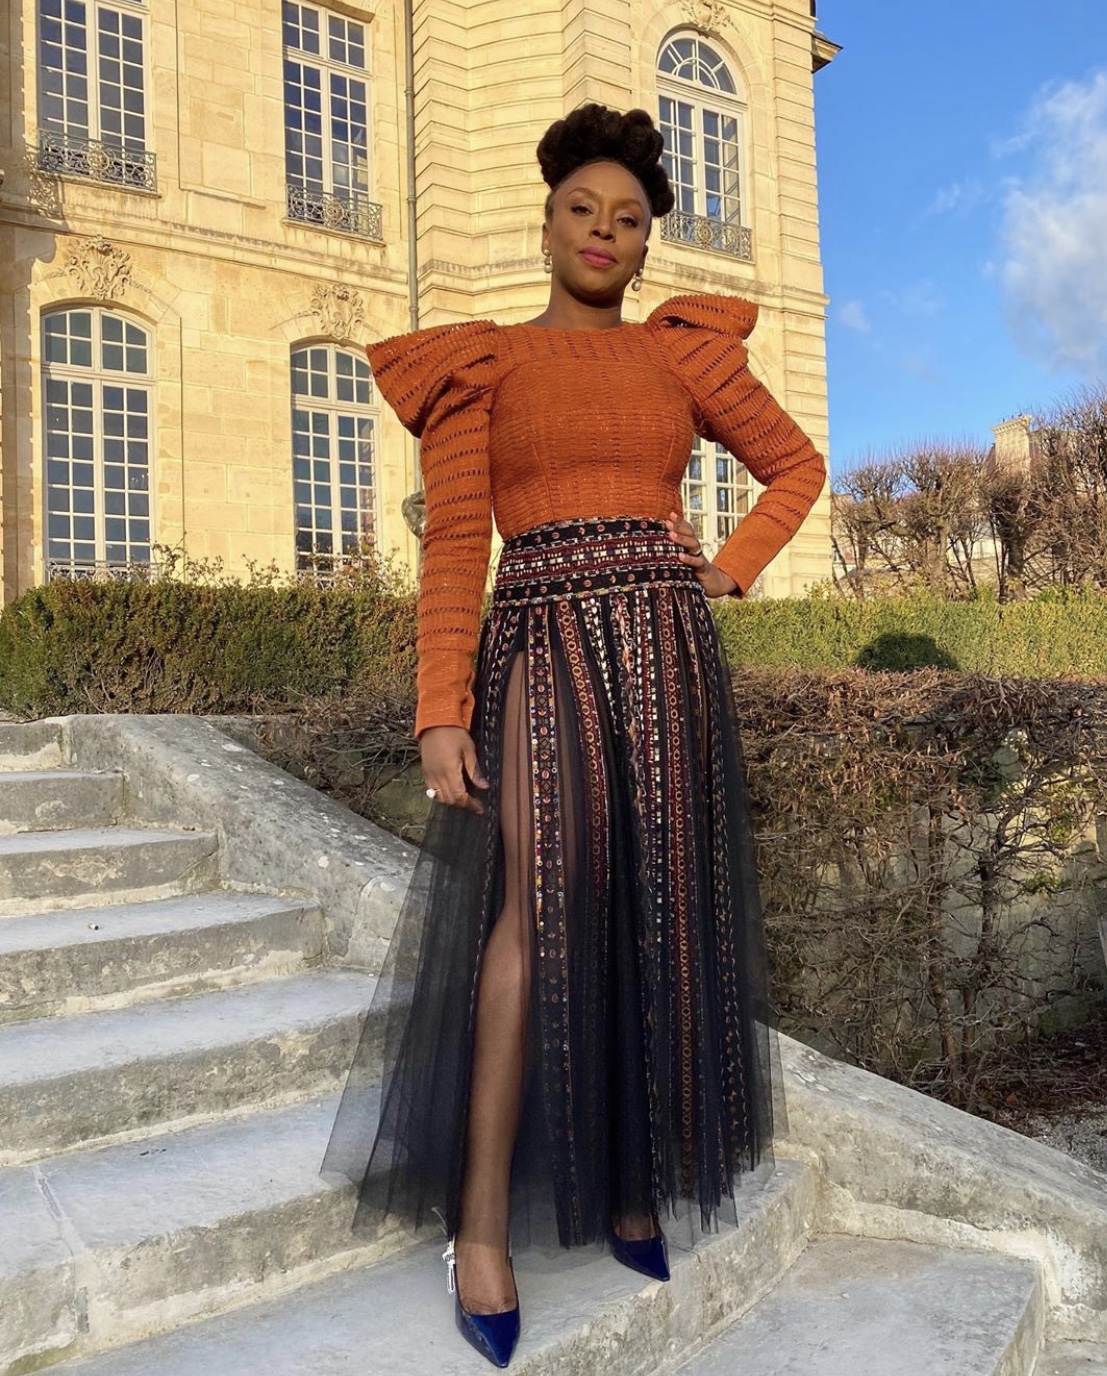 Chimamanda-Adichie-birthday-outfits